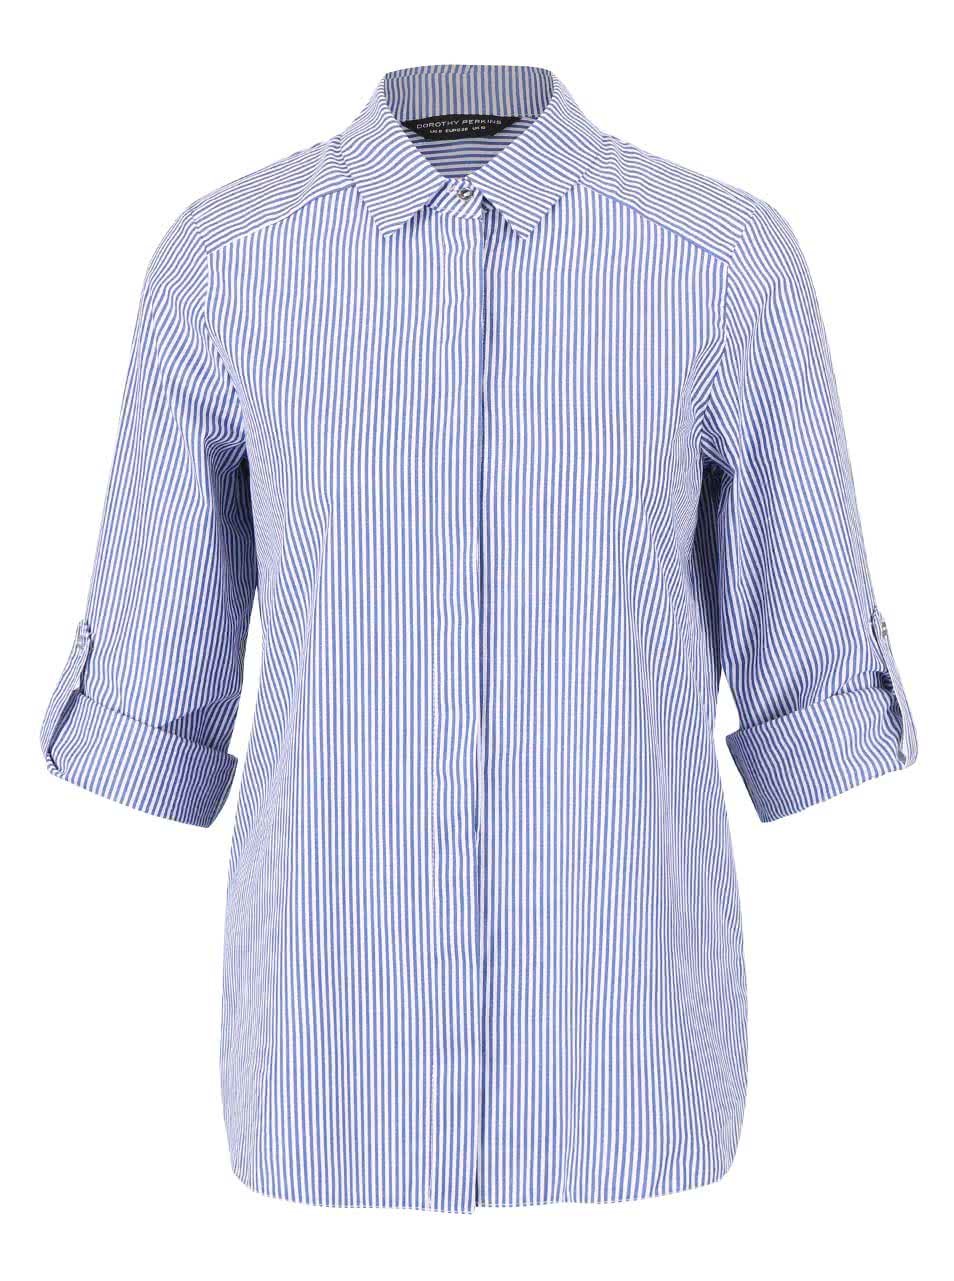 Bílo-modrá pruhovaná košile Dorothy Perkins